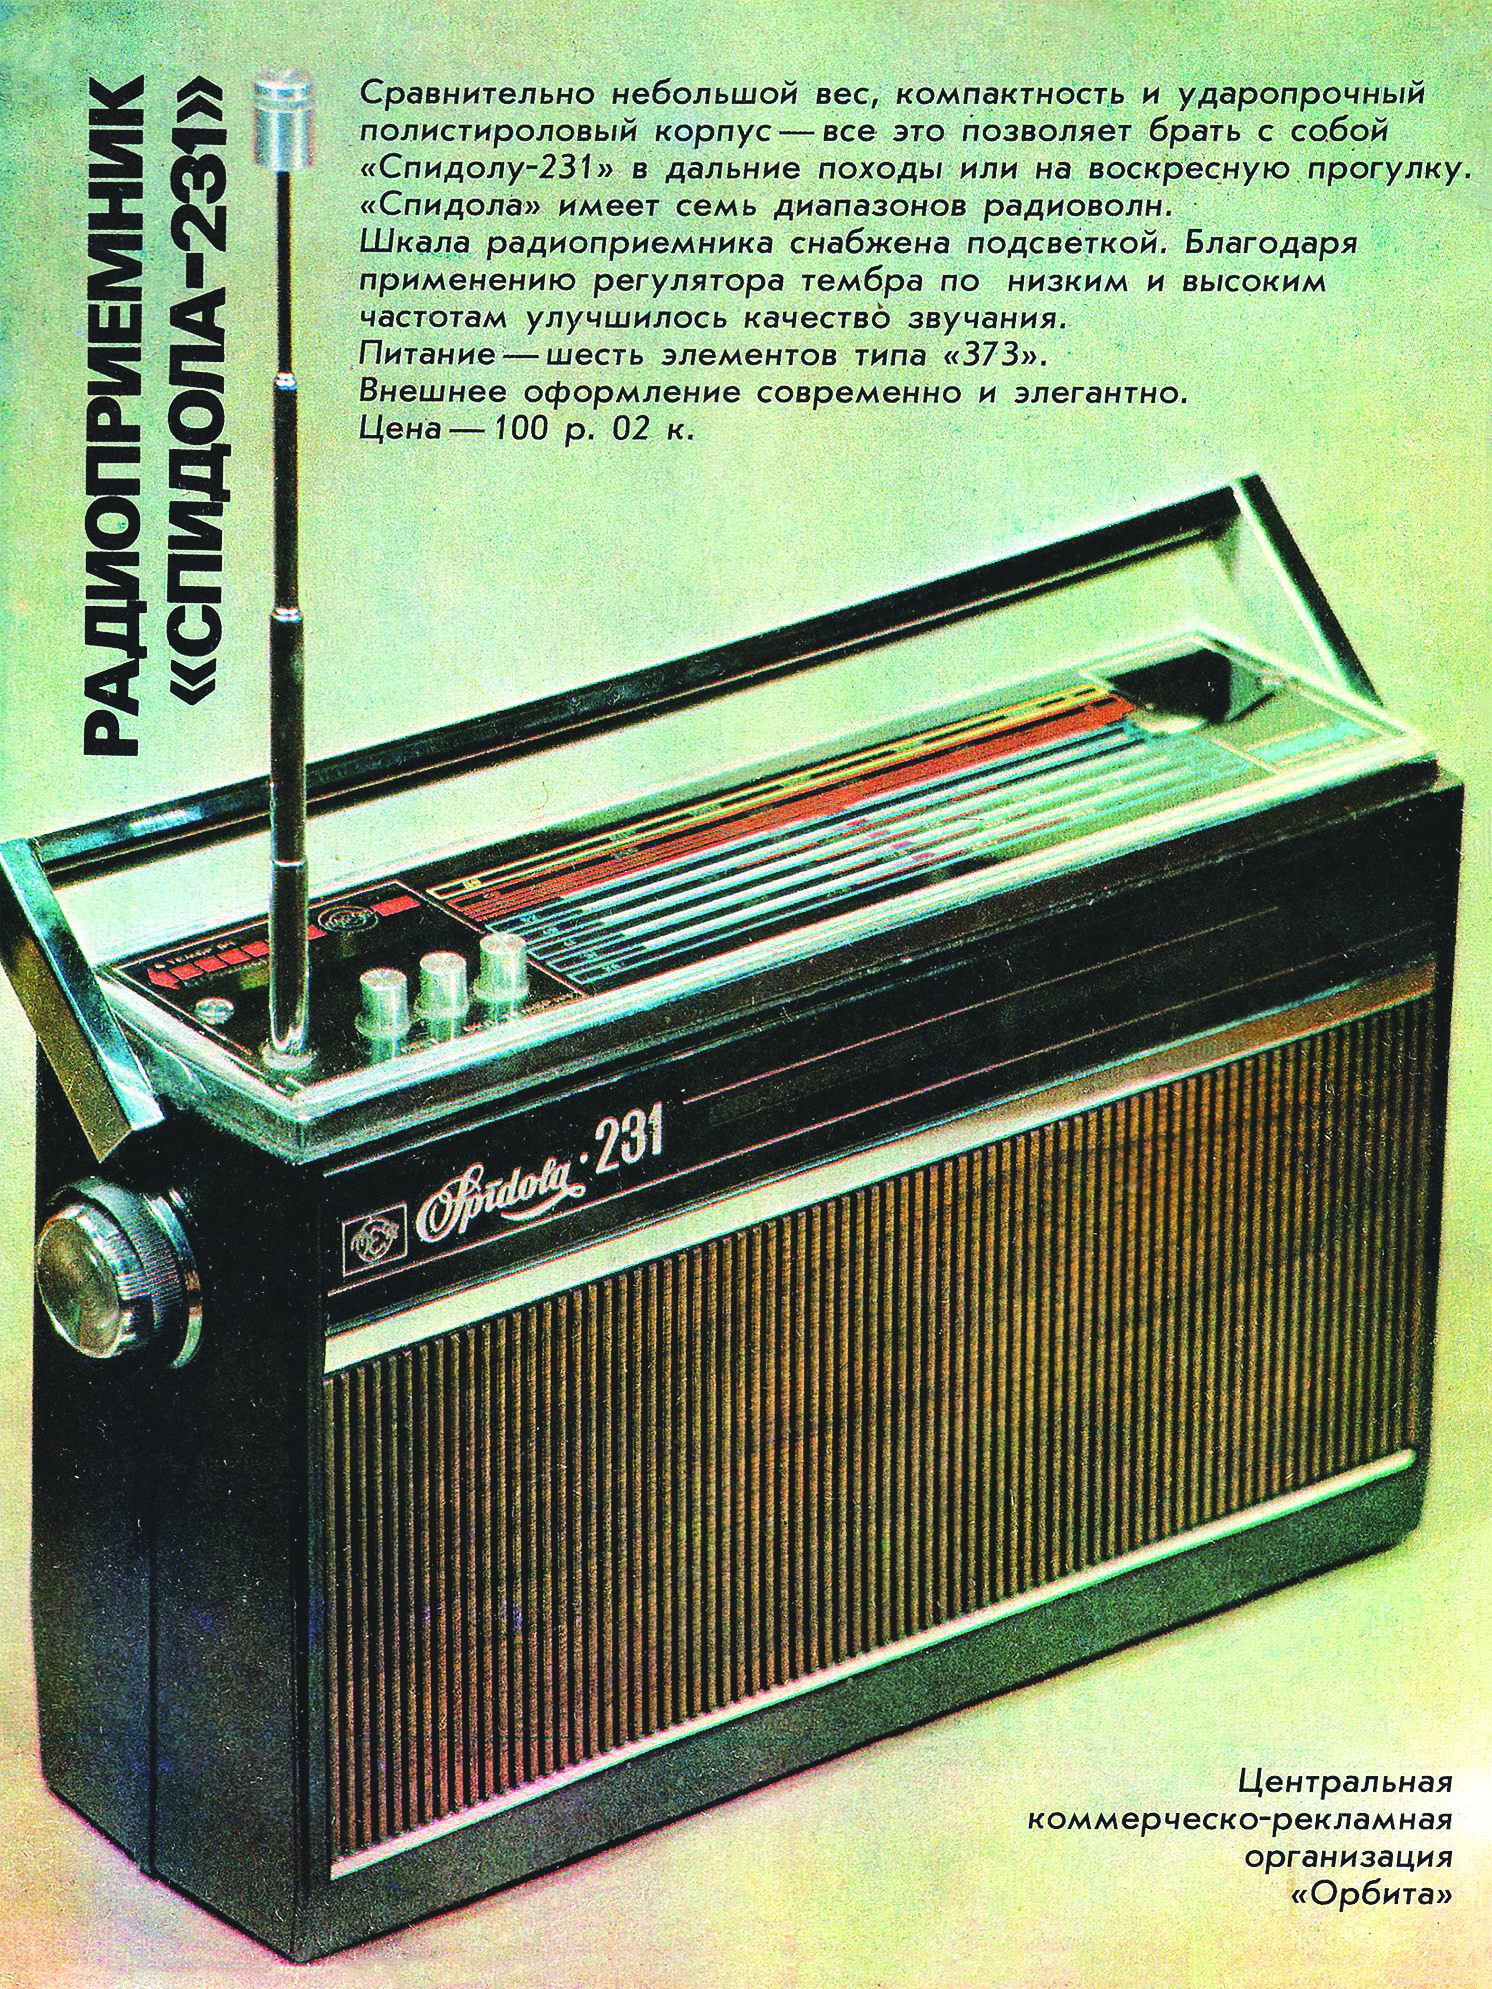 Реклама радиоприемника «Спидола-231». Из журнала «Новые товары». Декабрь 1977 г.